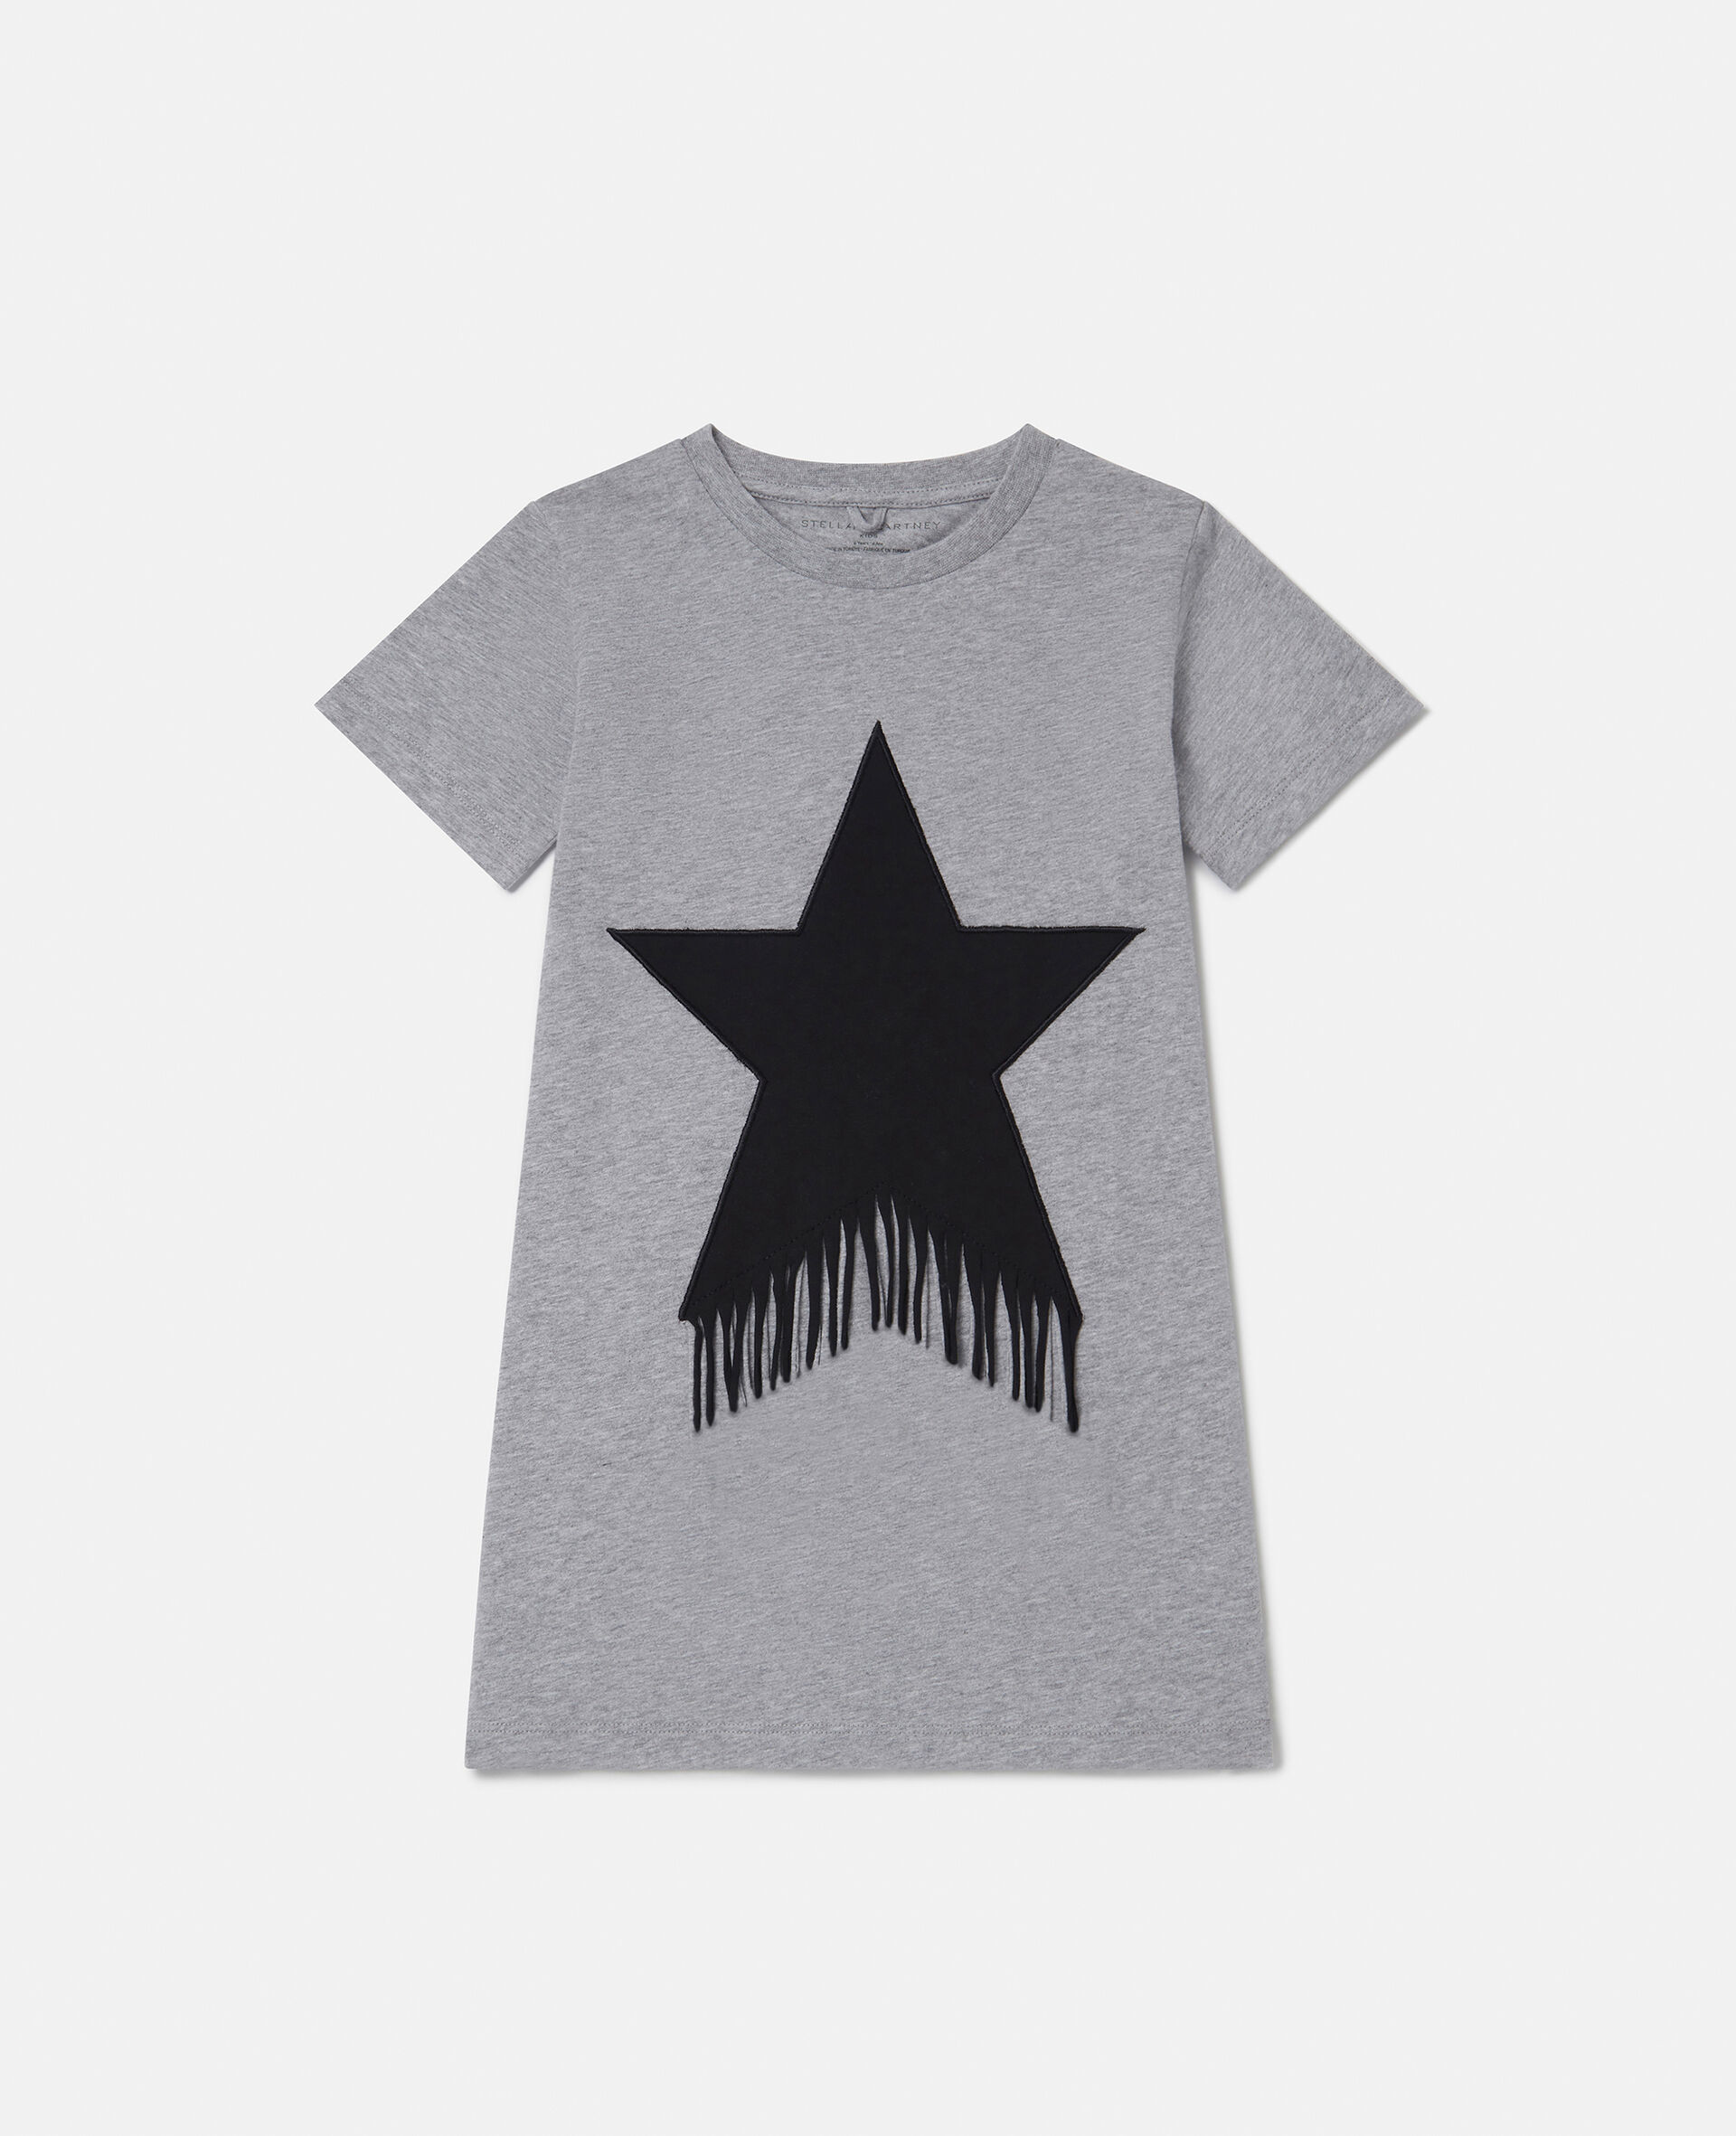 T-Shirt-Kleid mit Fransen und Stern-Motiv-Grau-large image number 0